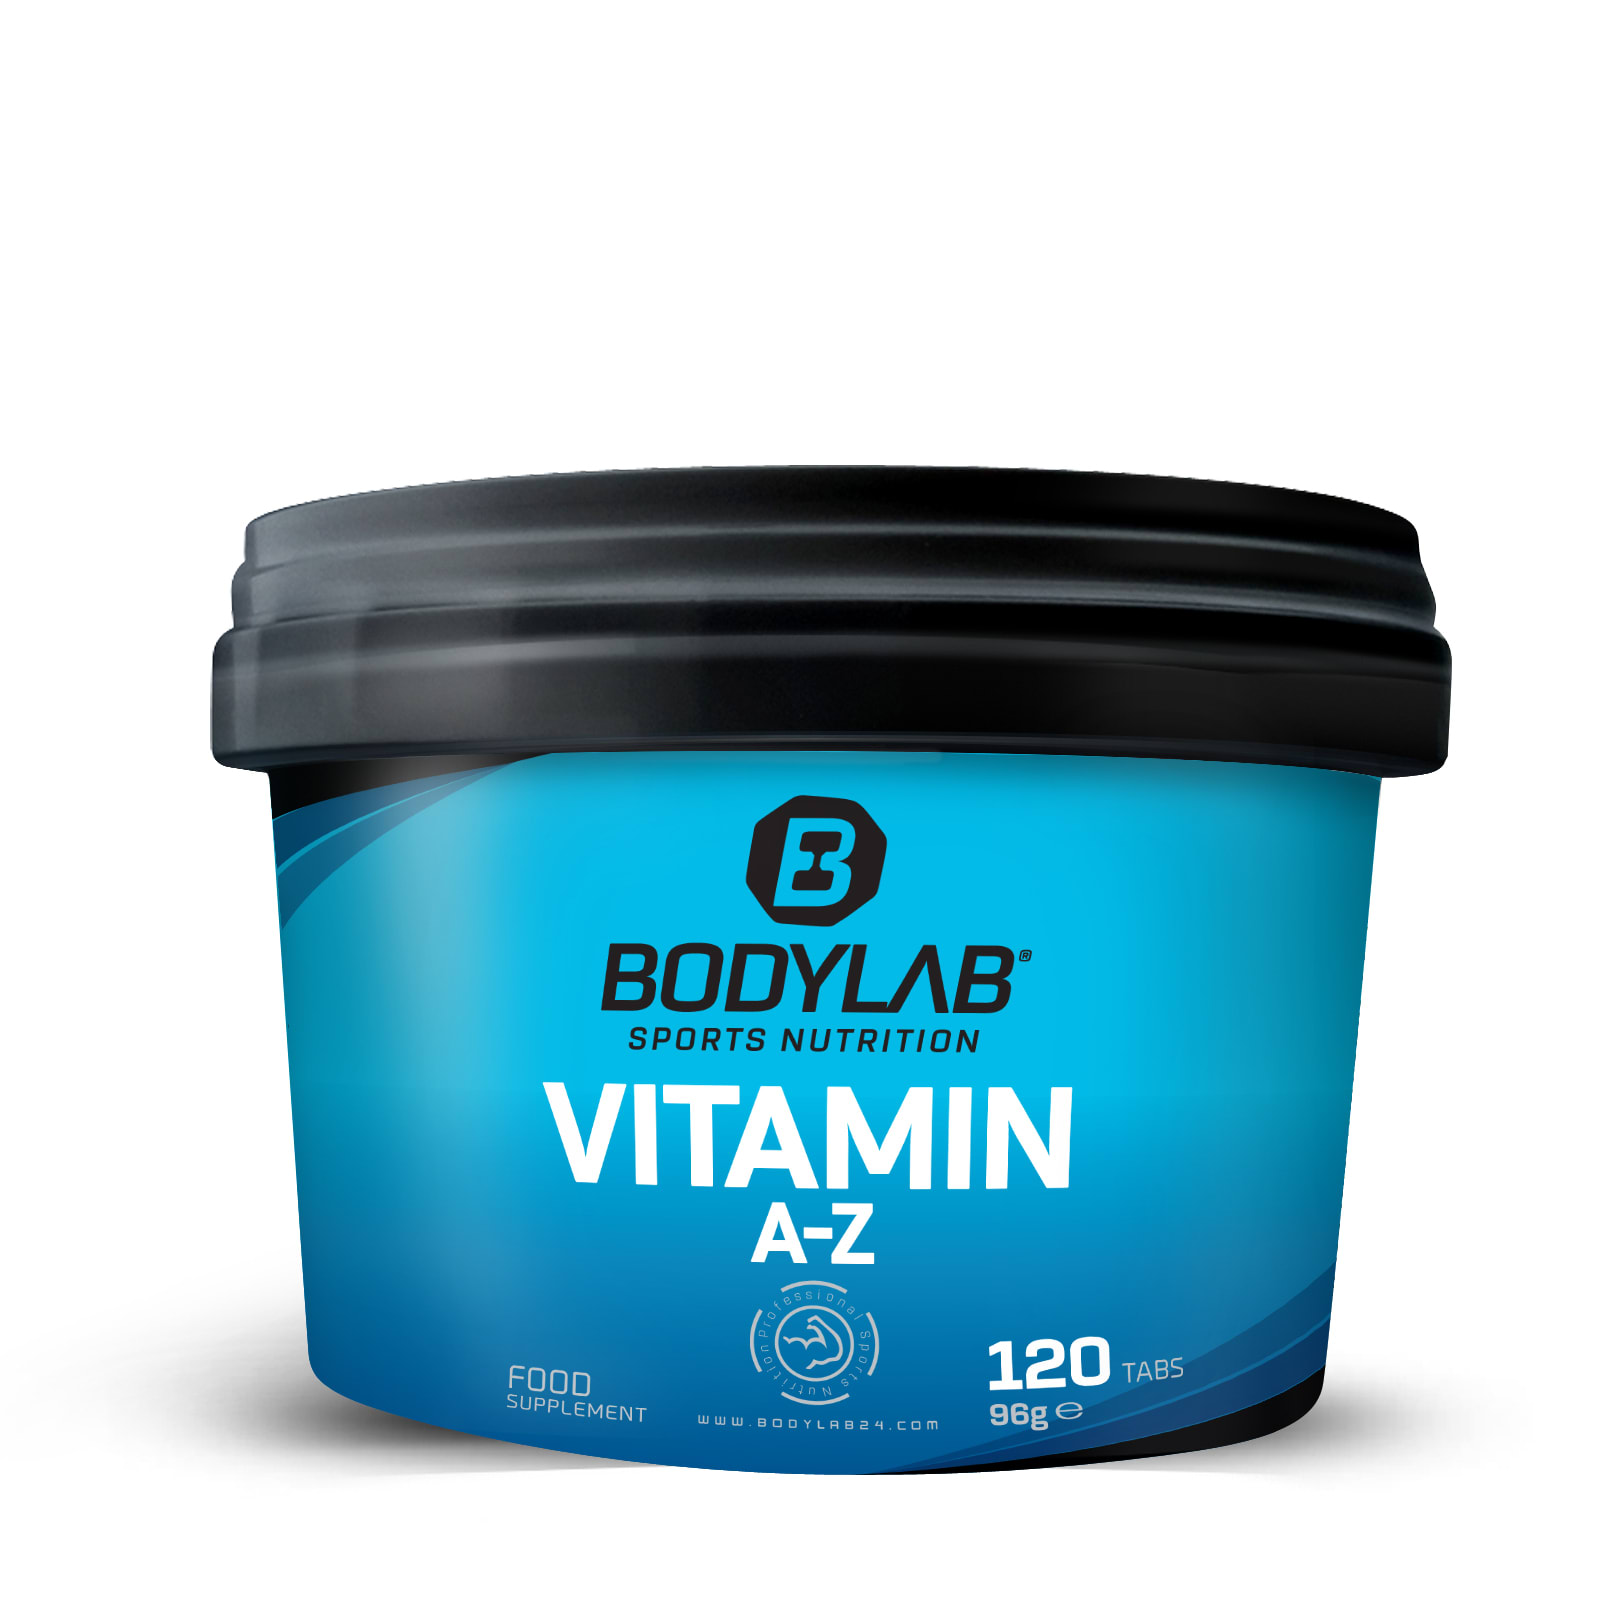 Componist Klimatologische bergen Fractie Vitamine A-Z Multi (120 capsules) van Bodylab24 kopen | Bodylab Shop